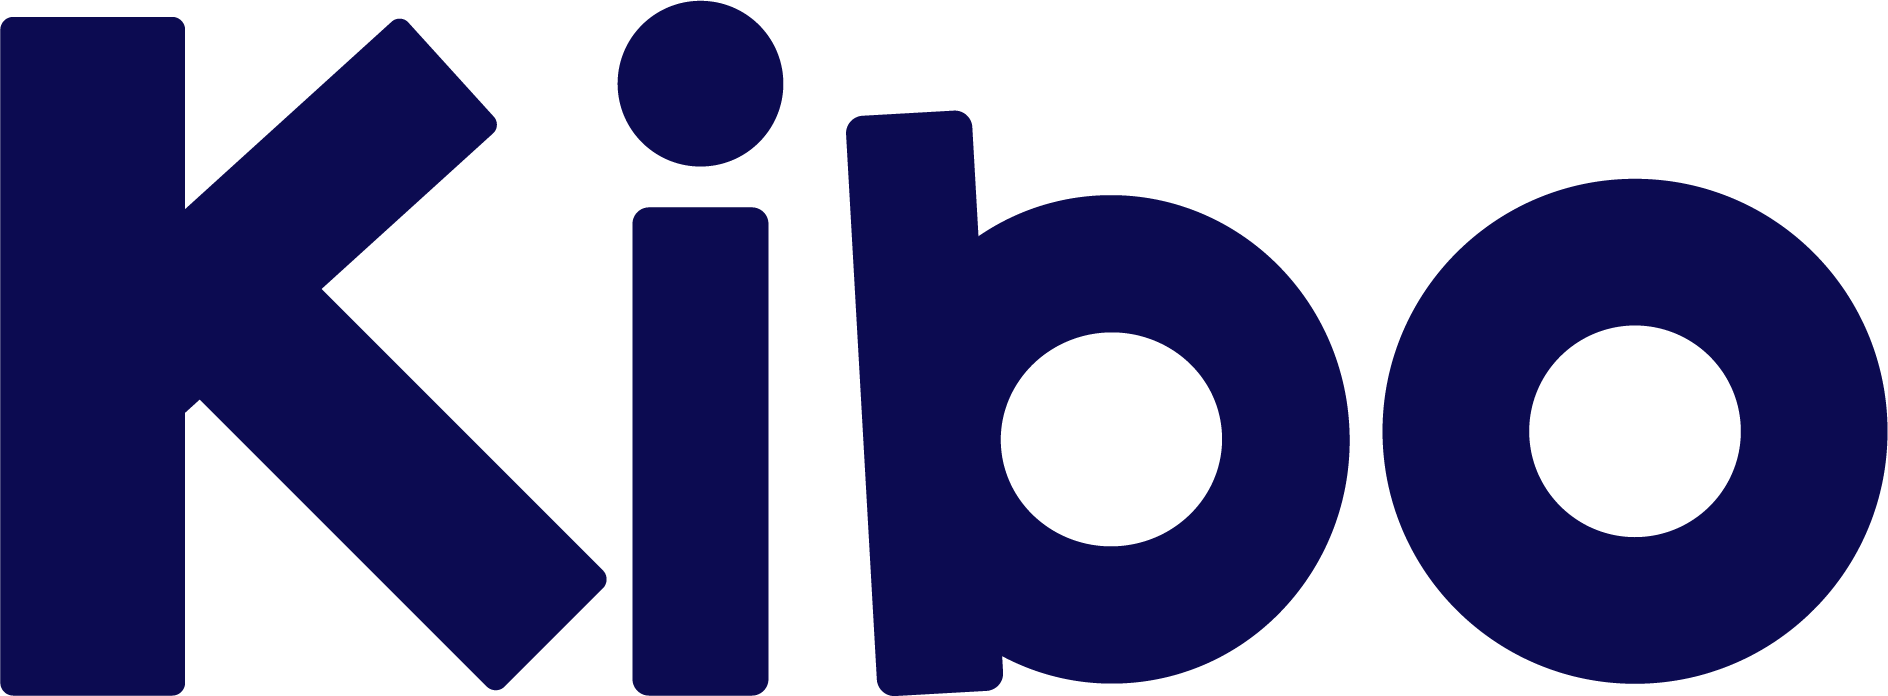 IDEA Legal Group logo для микроразметки